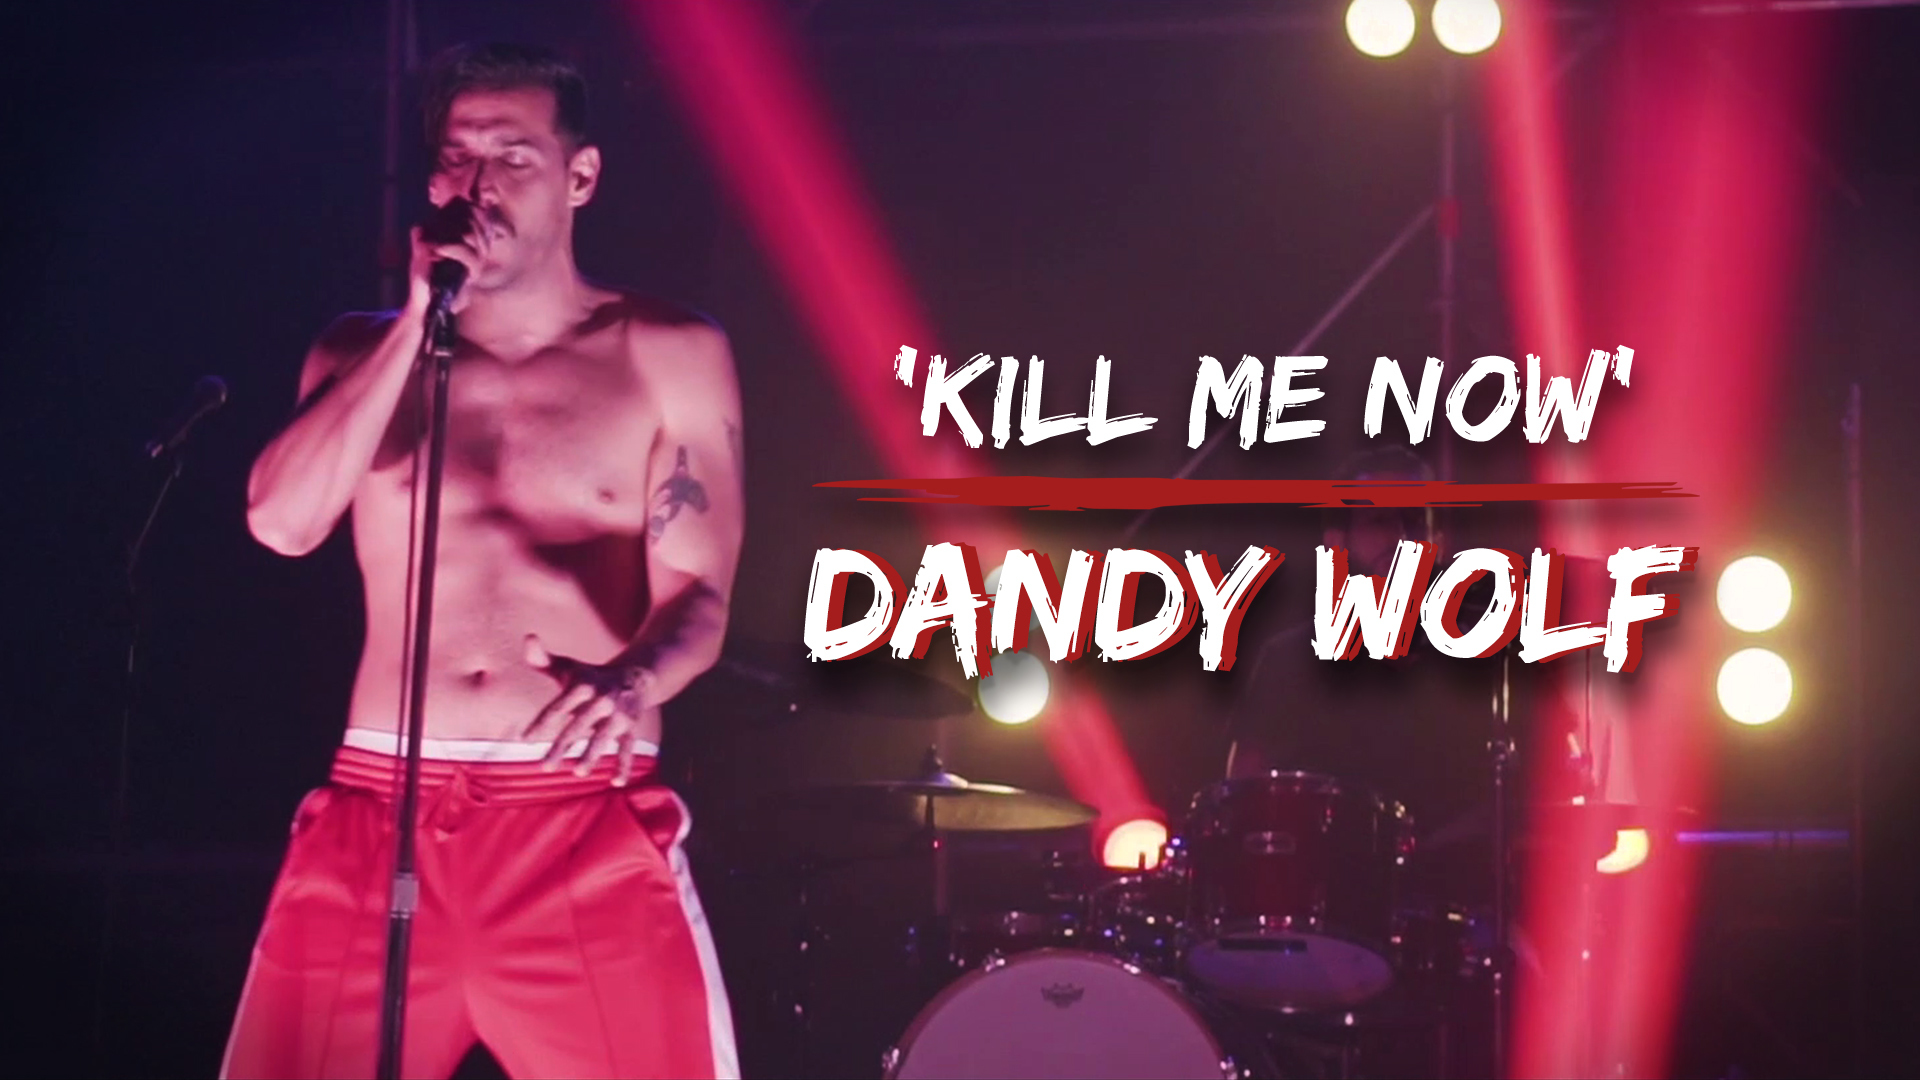 Temporada 1 Dandy Wolf - Kill me now | Más de 100 mentiras